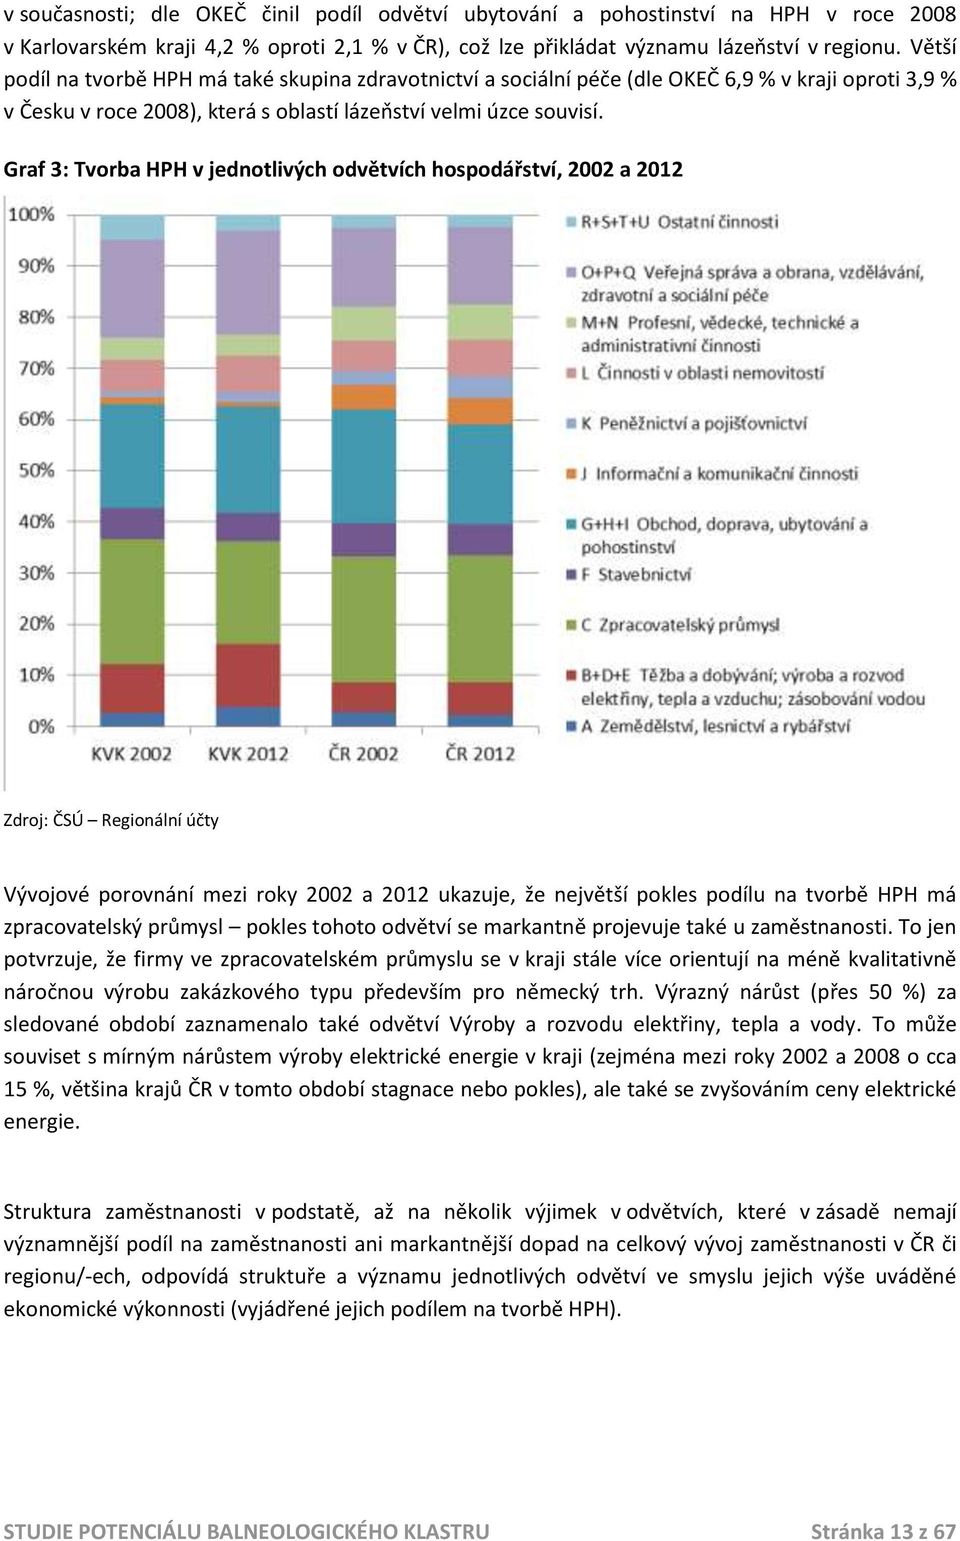 Graf 3: Tvorba HPH v jednotlivých odvětvích hospodářství, 2002 a 2012 Zdroj: ČSÚ Regionální účty Vývojové porovnání mezi roky 2002 a 2012 ukazuje, že největší pokles podílu na tvorbě HPH má